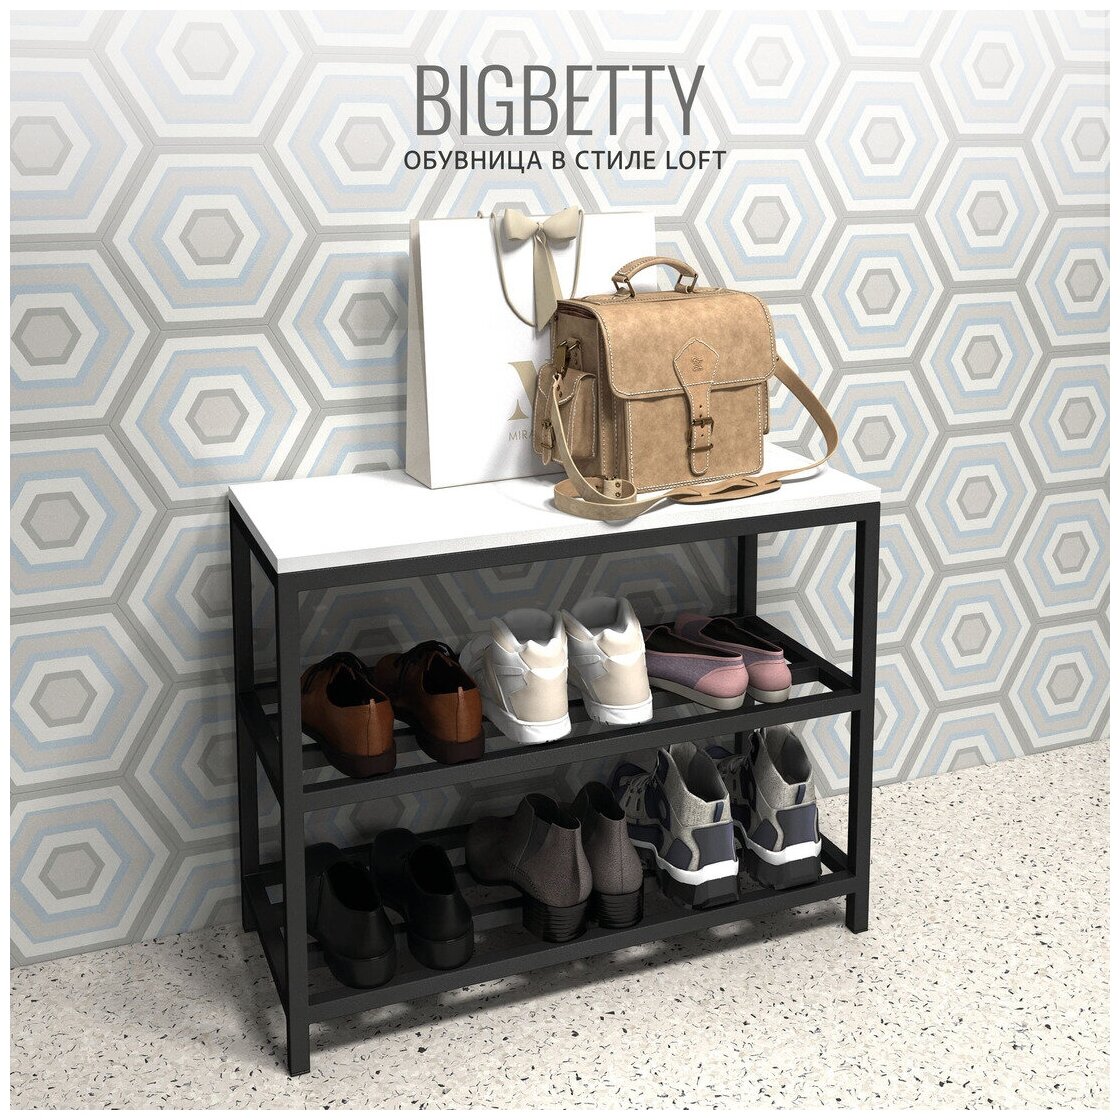 Обувница в прихожую BIGBETTY Loft, белая, с сиденьем, 70х30х55см, Гростат